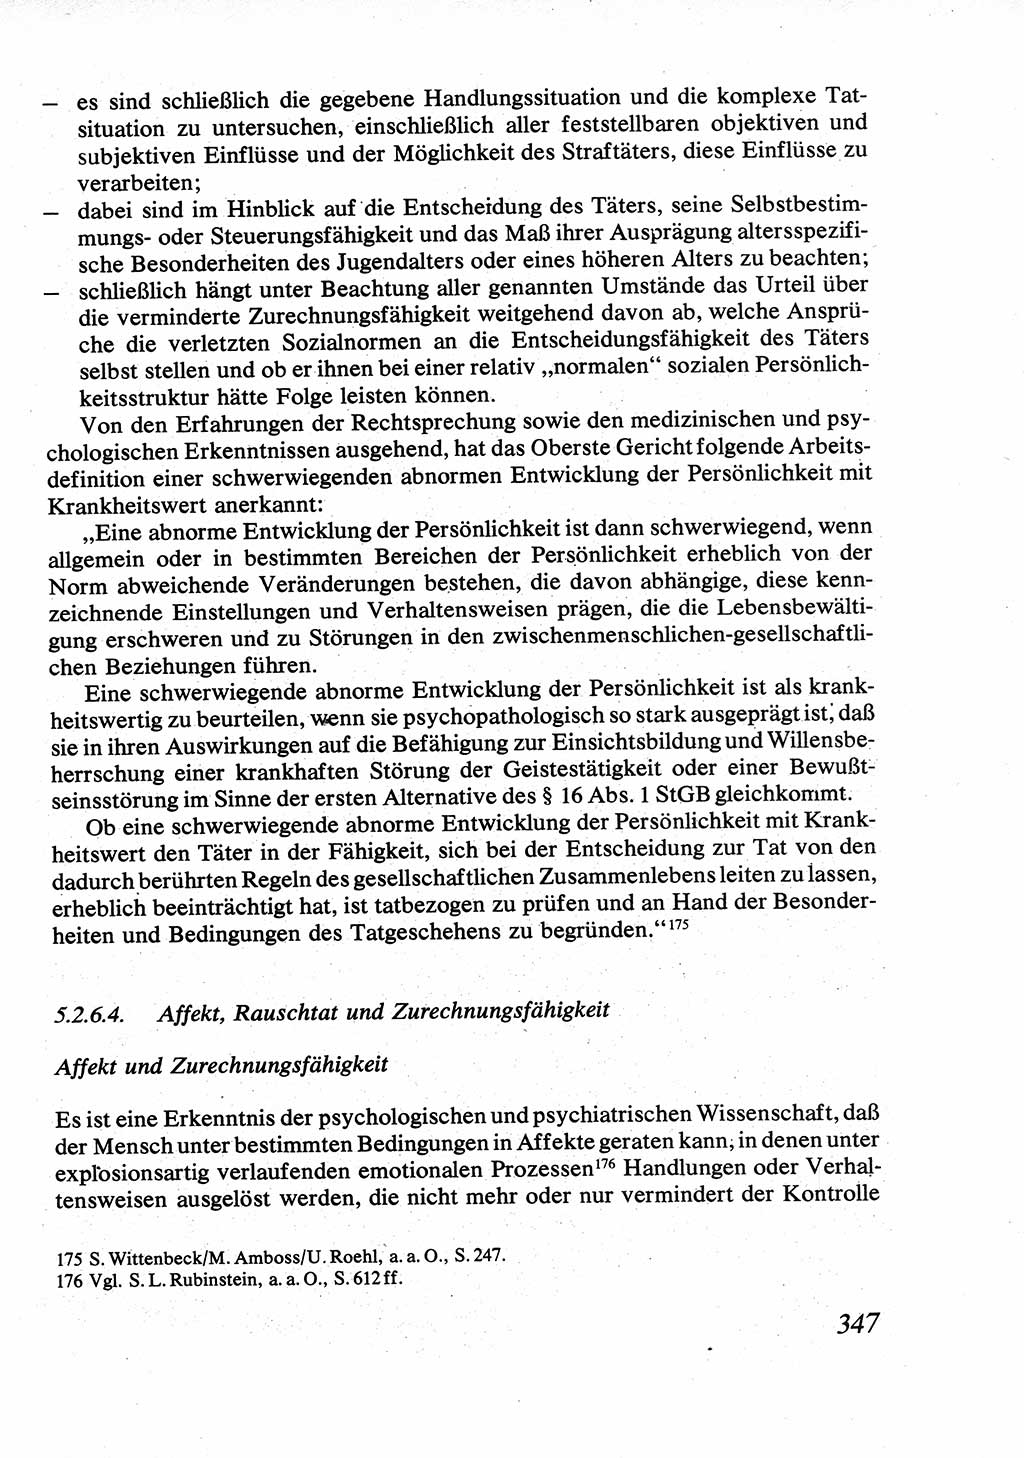 Strafrecht [Deutsche Demokratische Republik (DDR)], Allgemeiner Teil, Lehrbuch 1976, Seite 347 (Strafr. DDR AT Lb. 1976, S. 347)